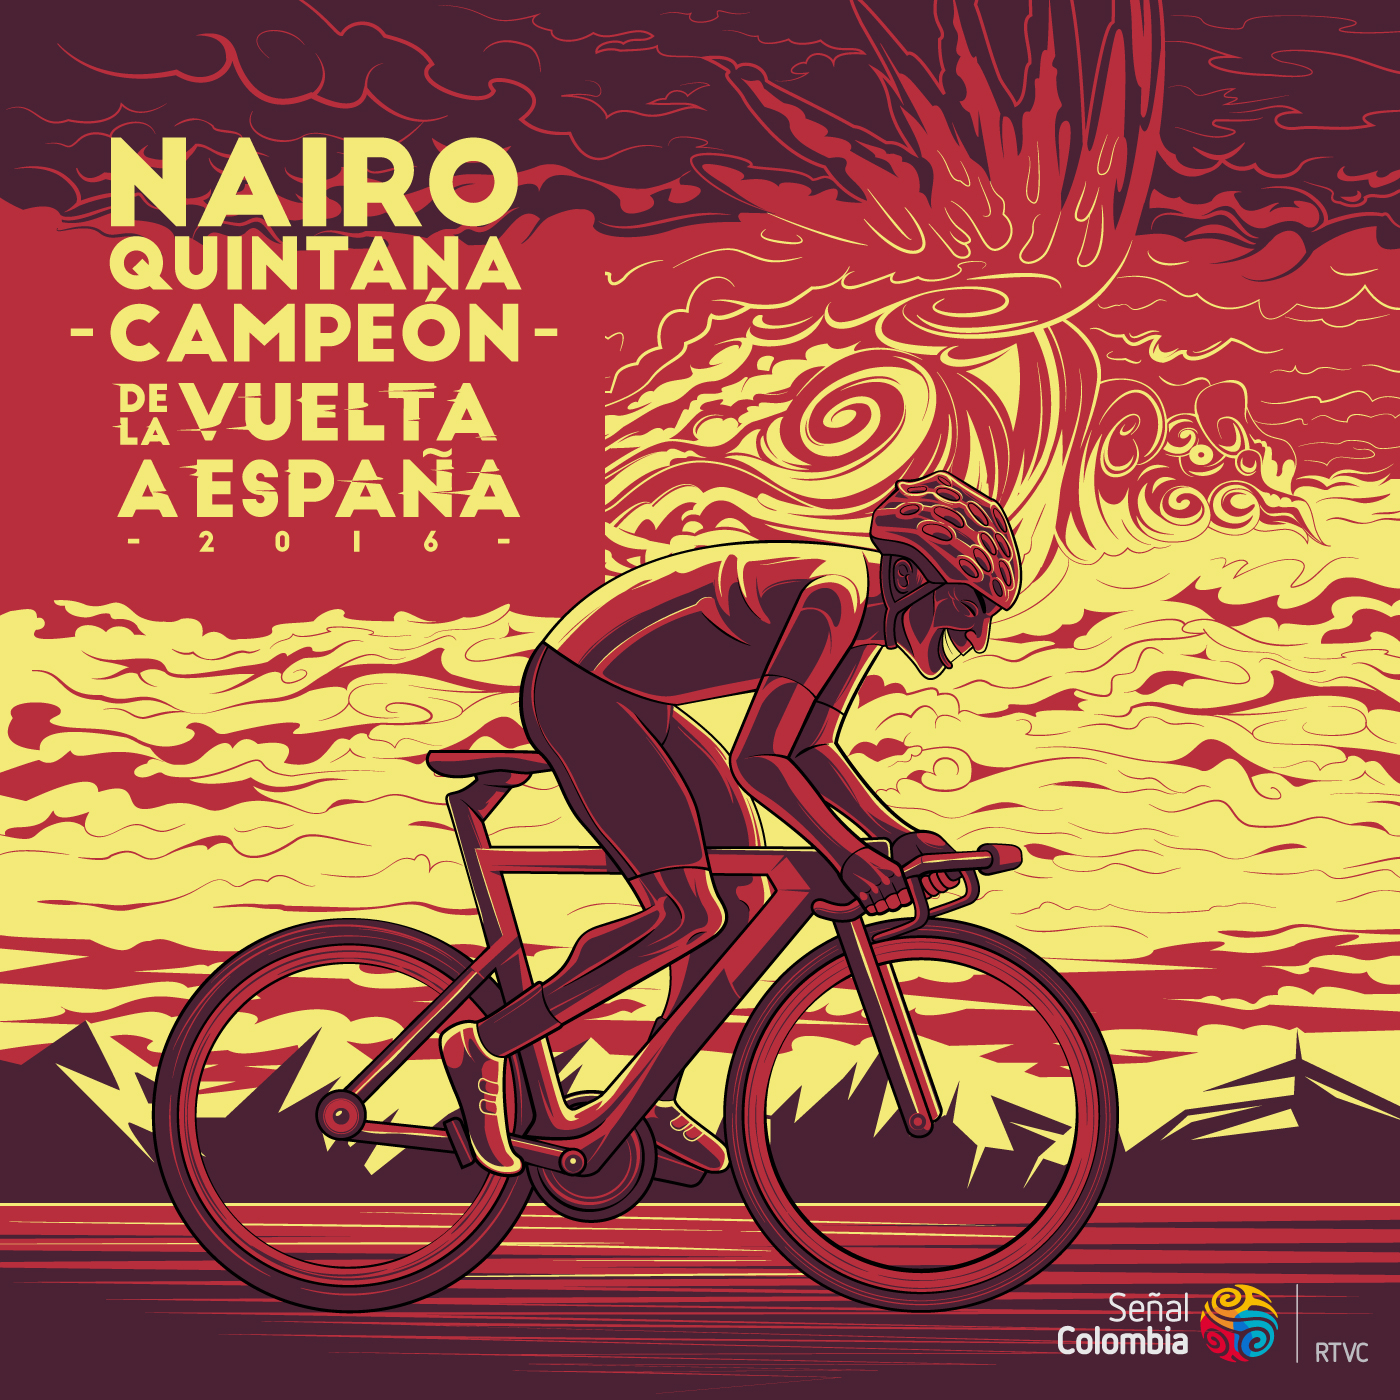 Cycling ciclismo La vuelta España Nairo Quintana Esteban Chavez Darwin Atapuma señal colombia motion 2D vector